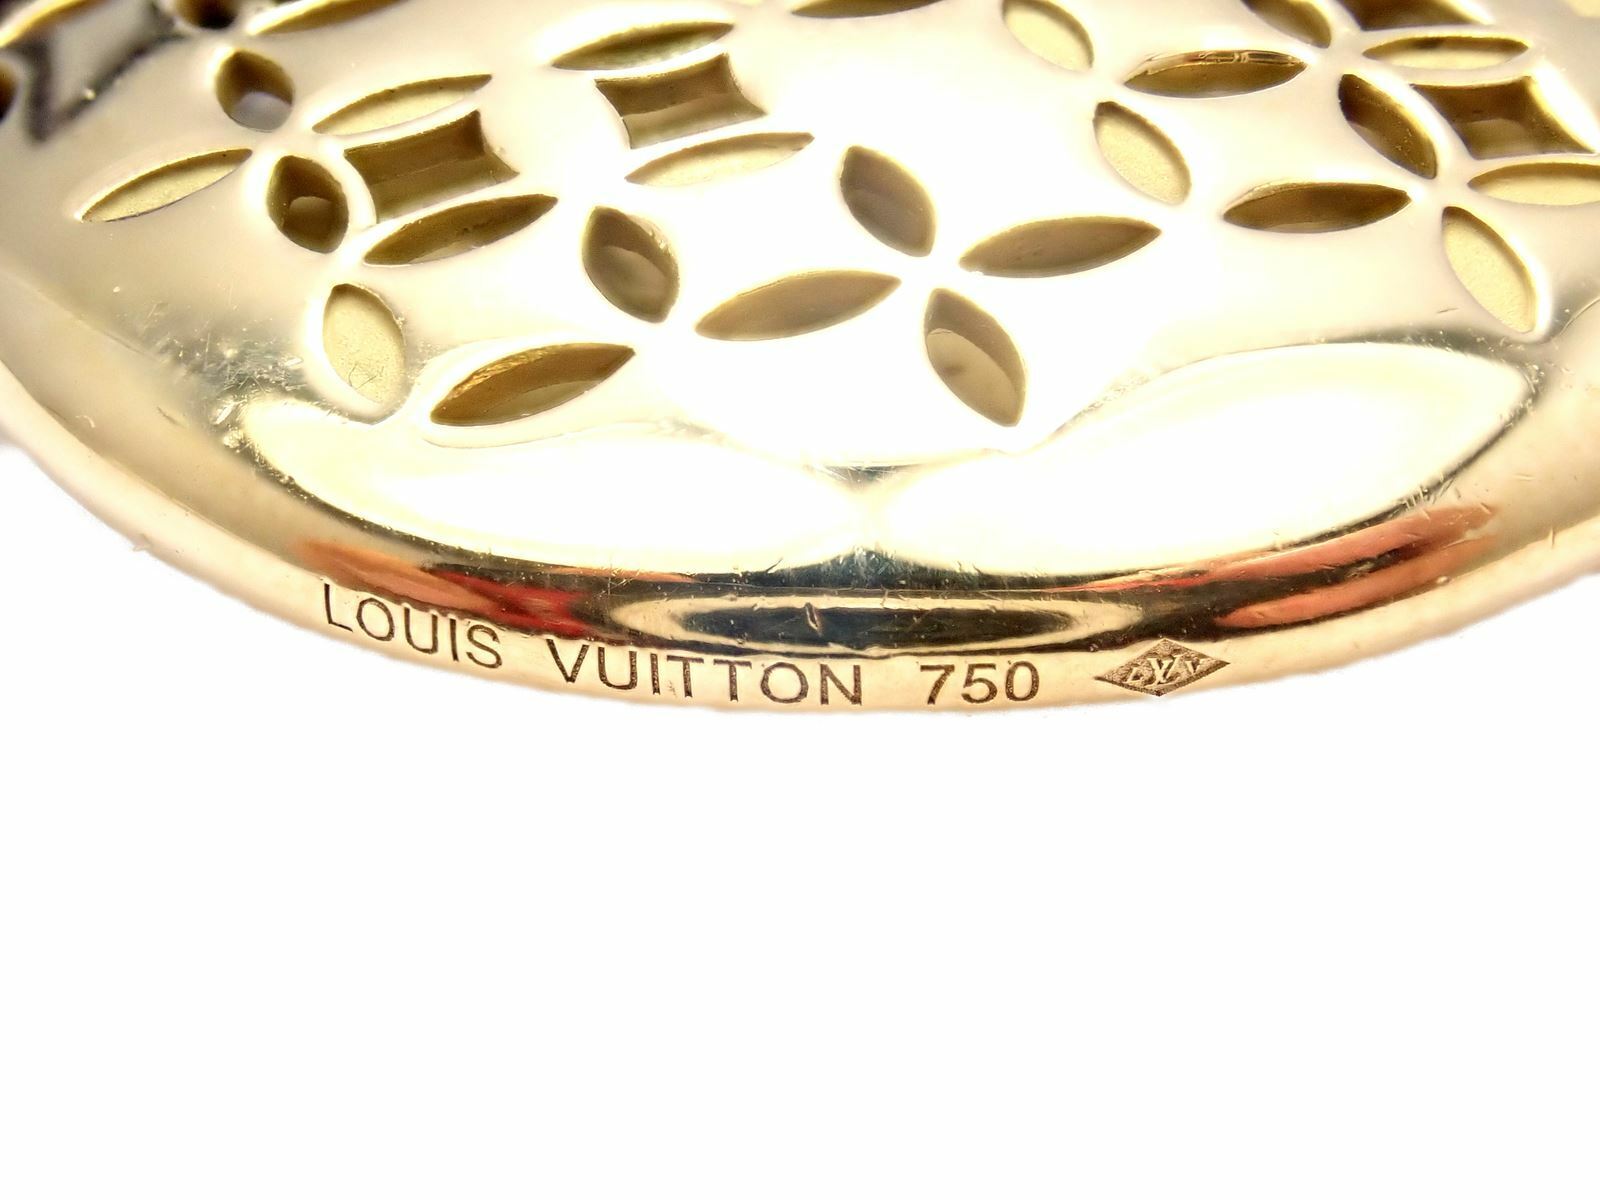 Authentic! Louis Vuitton 18K Yellow Gold Quartz Purse Bag Pendant Chain Necklace